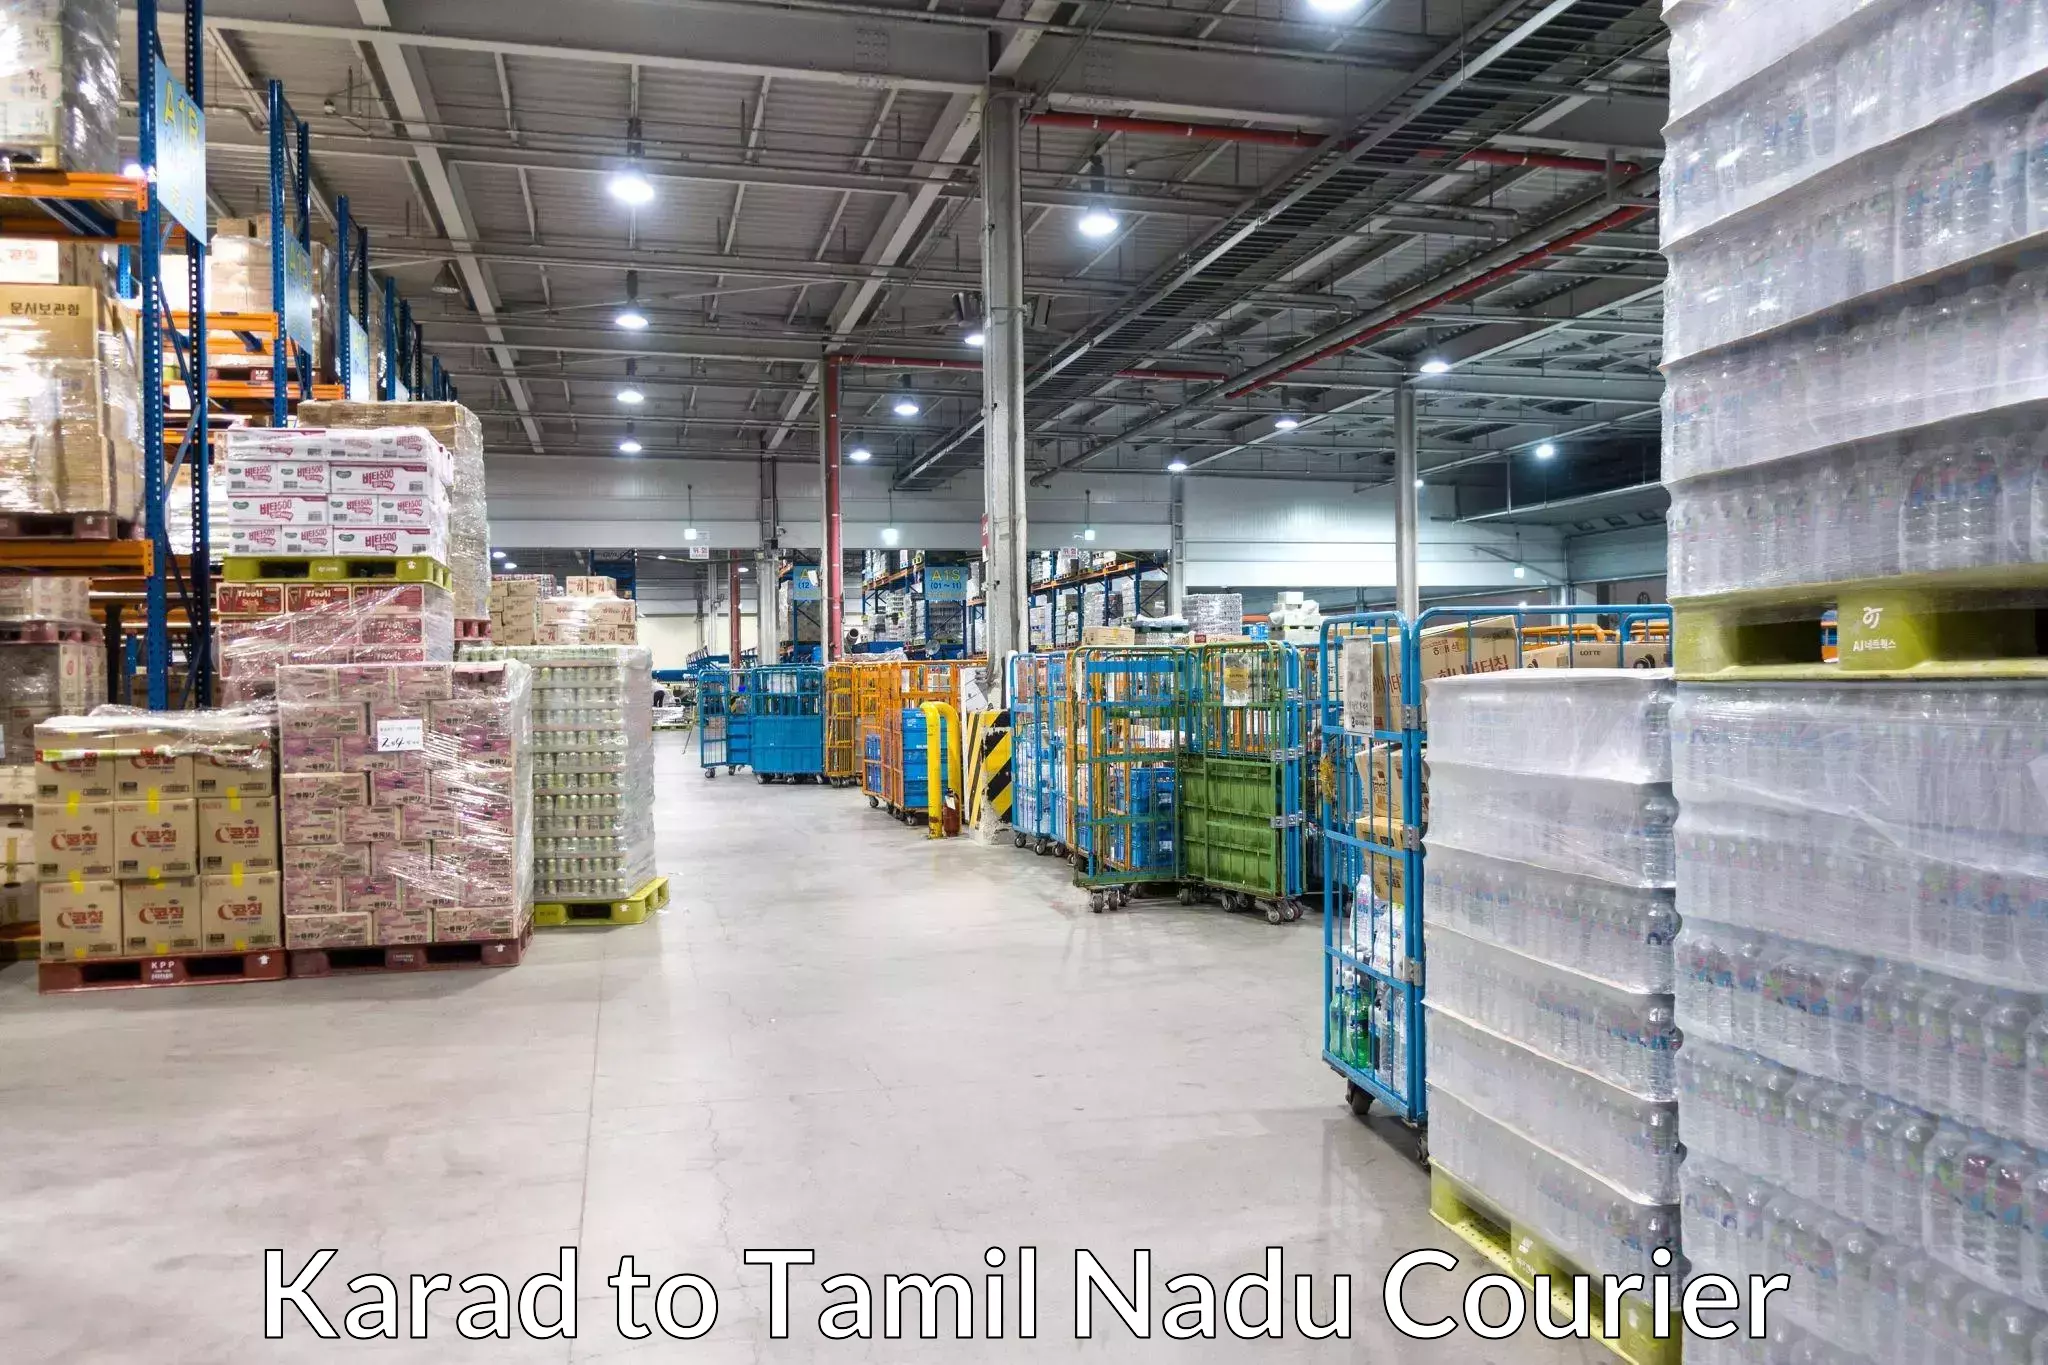 Furniture transport professionals Karad to Tamil Nadu